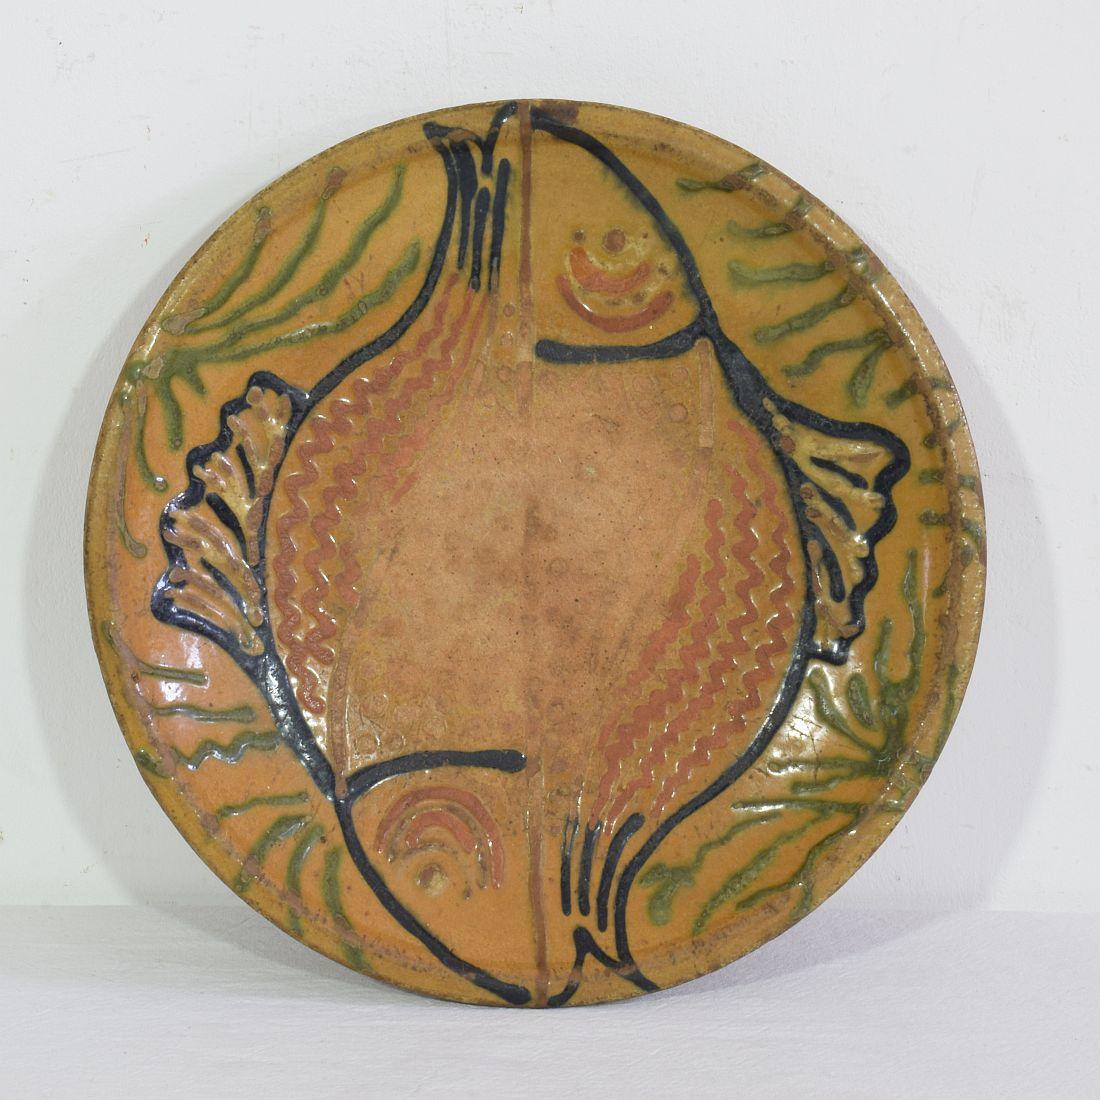 Wunderbar glasiert  Keramikteller/Schale mit der Darstellung zweier Fische. Ein großartiges Stück Volkskunst.
Frankreich um 1850-1900. Verwittert